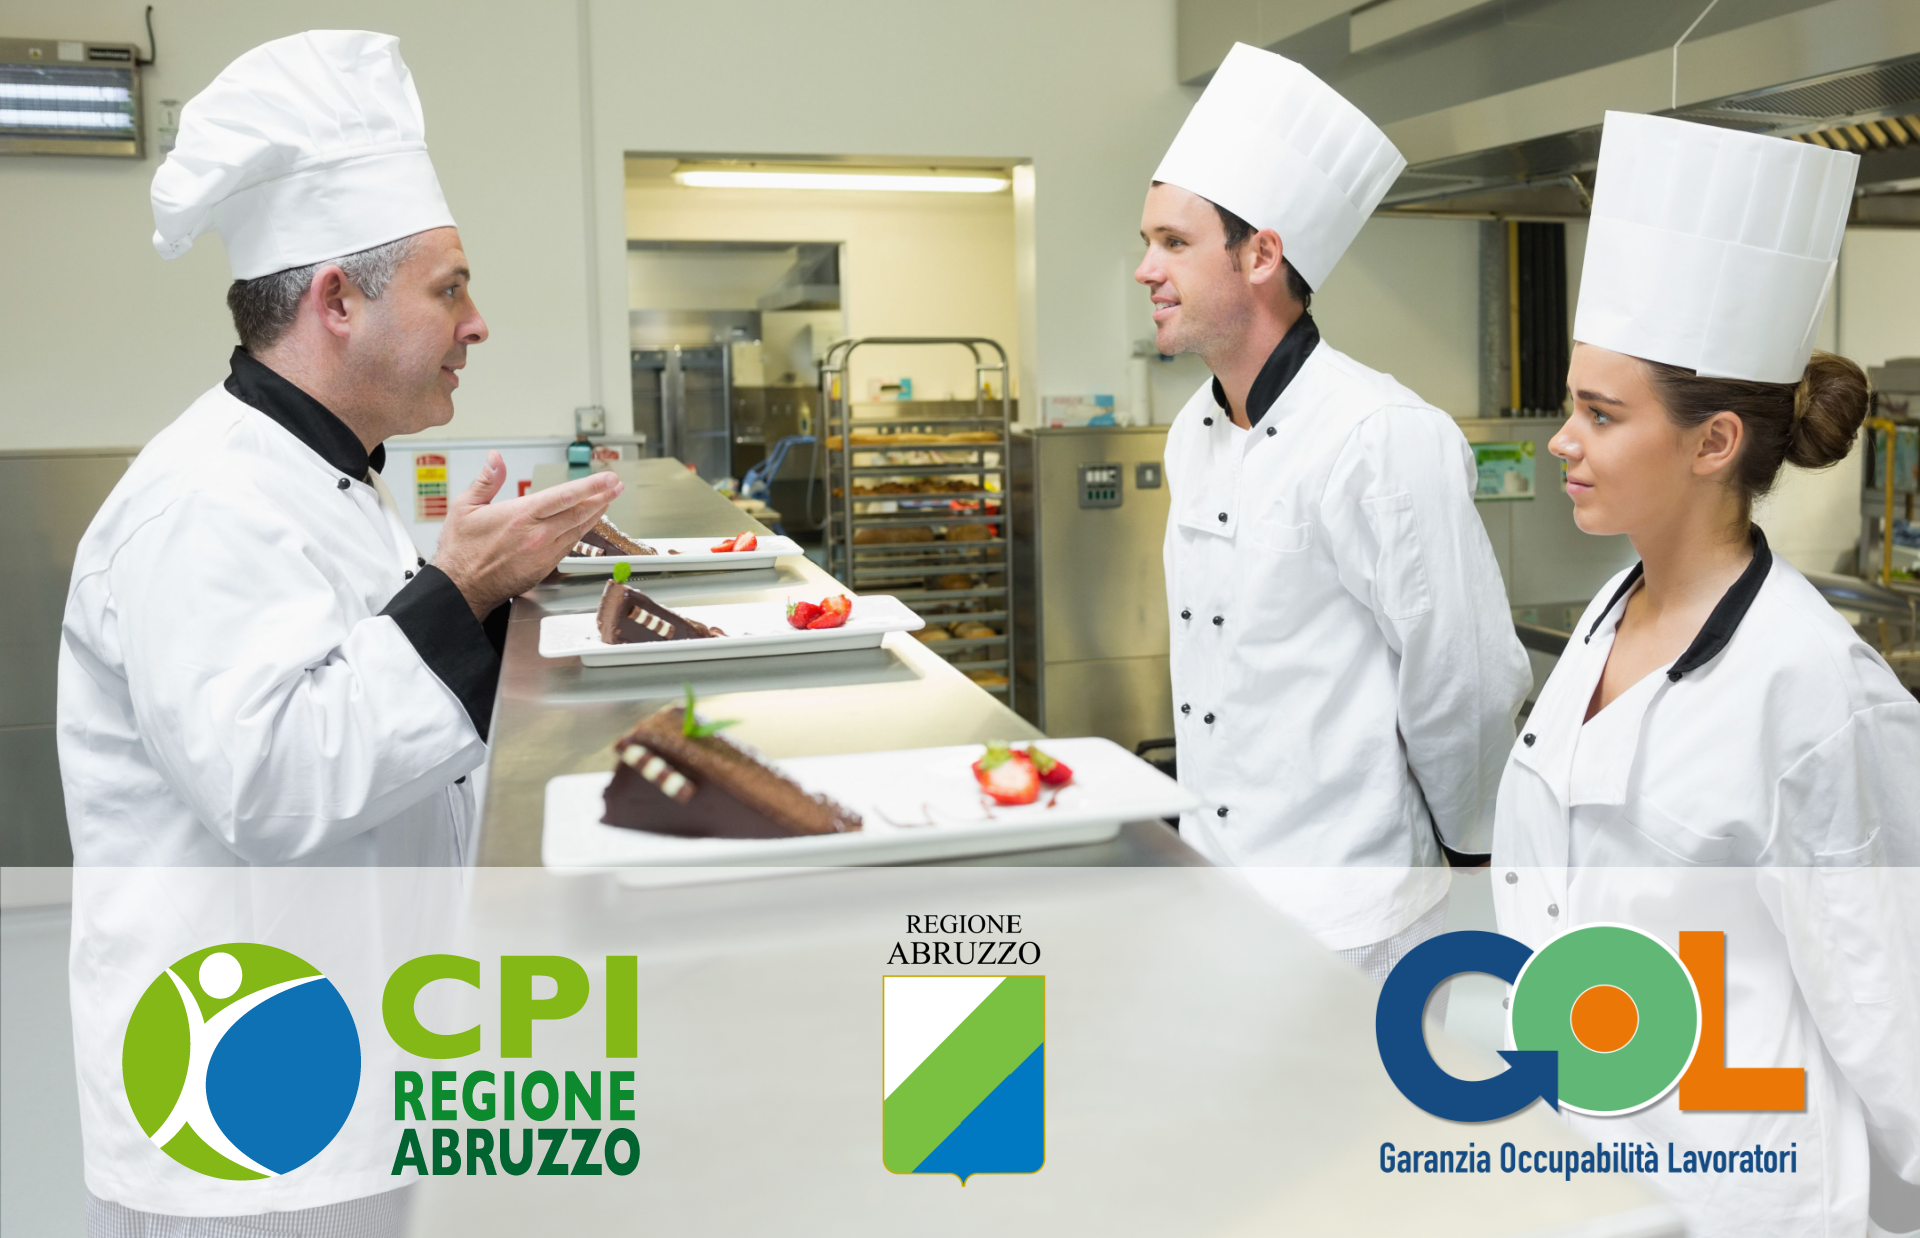 Corso di Qualifica di Aiuto Cuoco - Programma Gol | Abruzzo